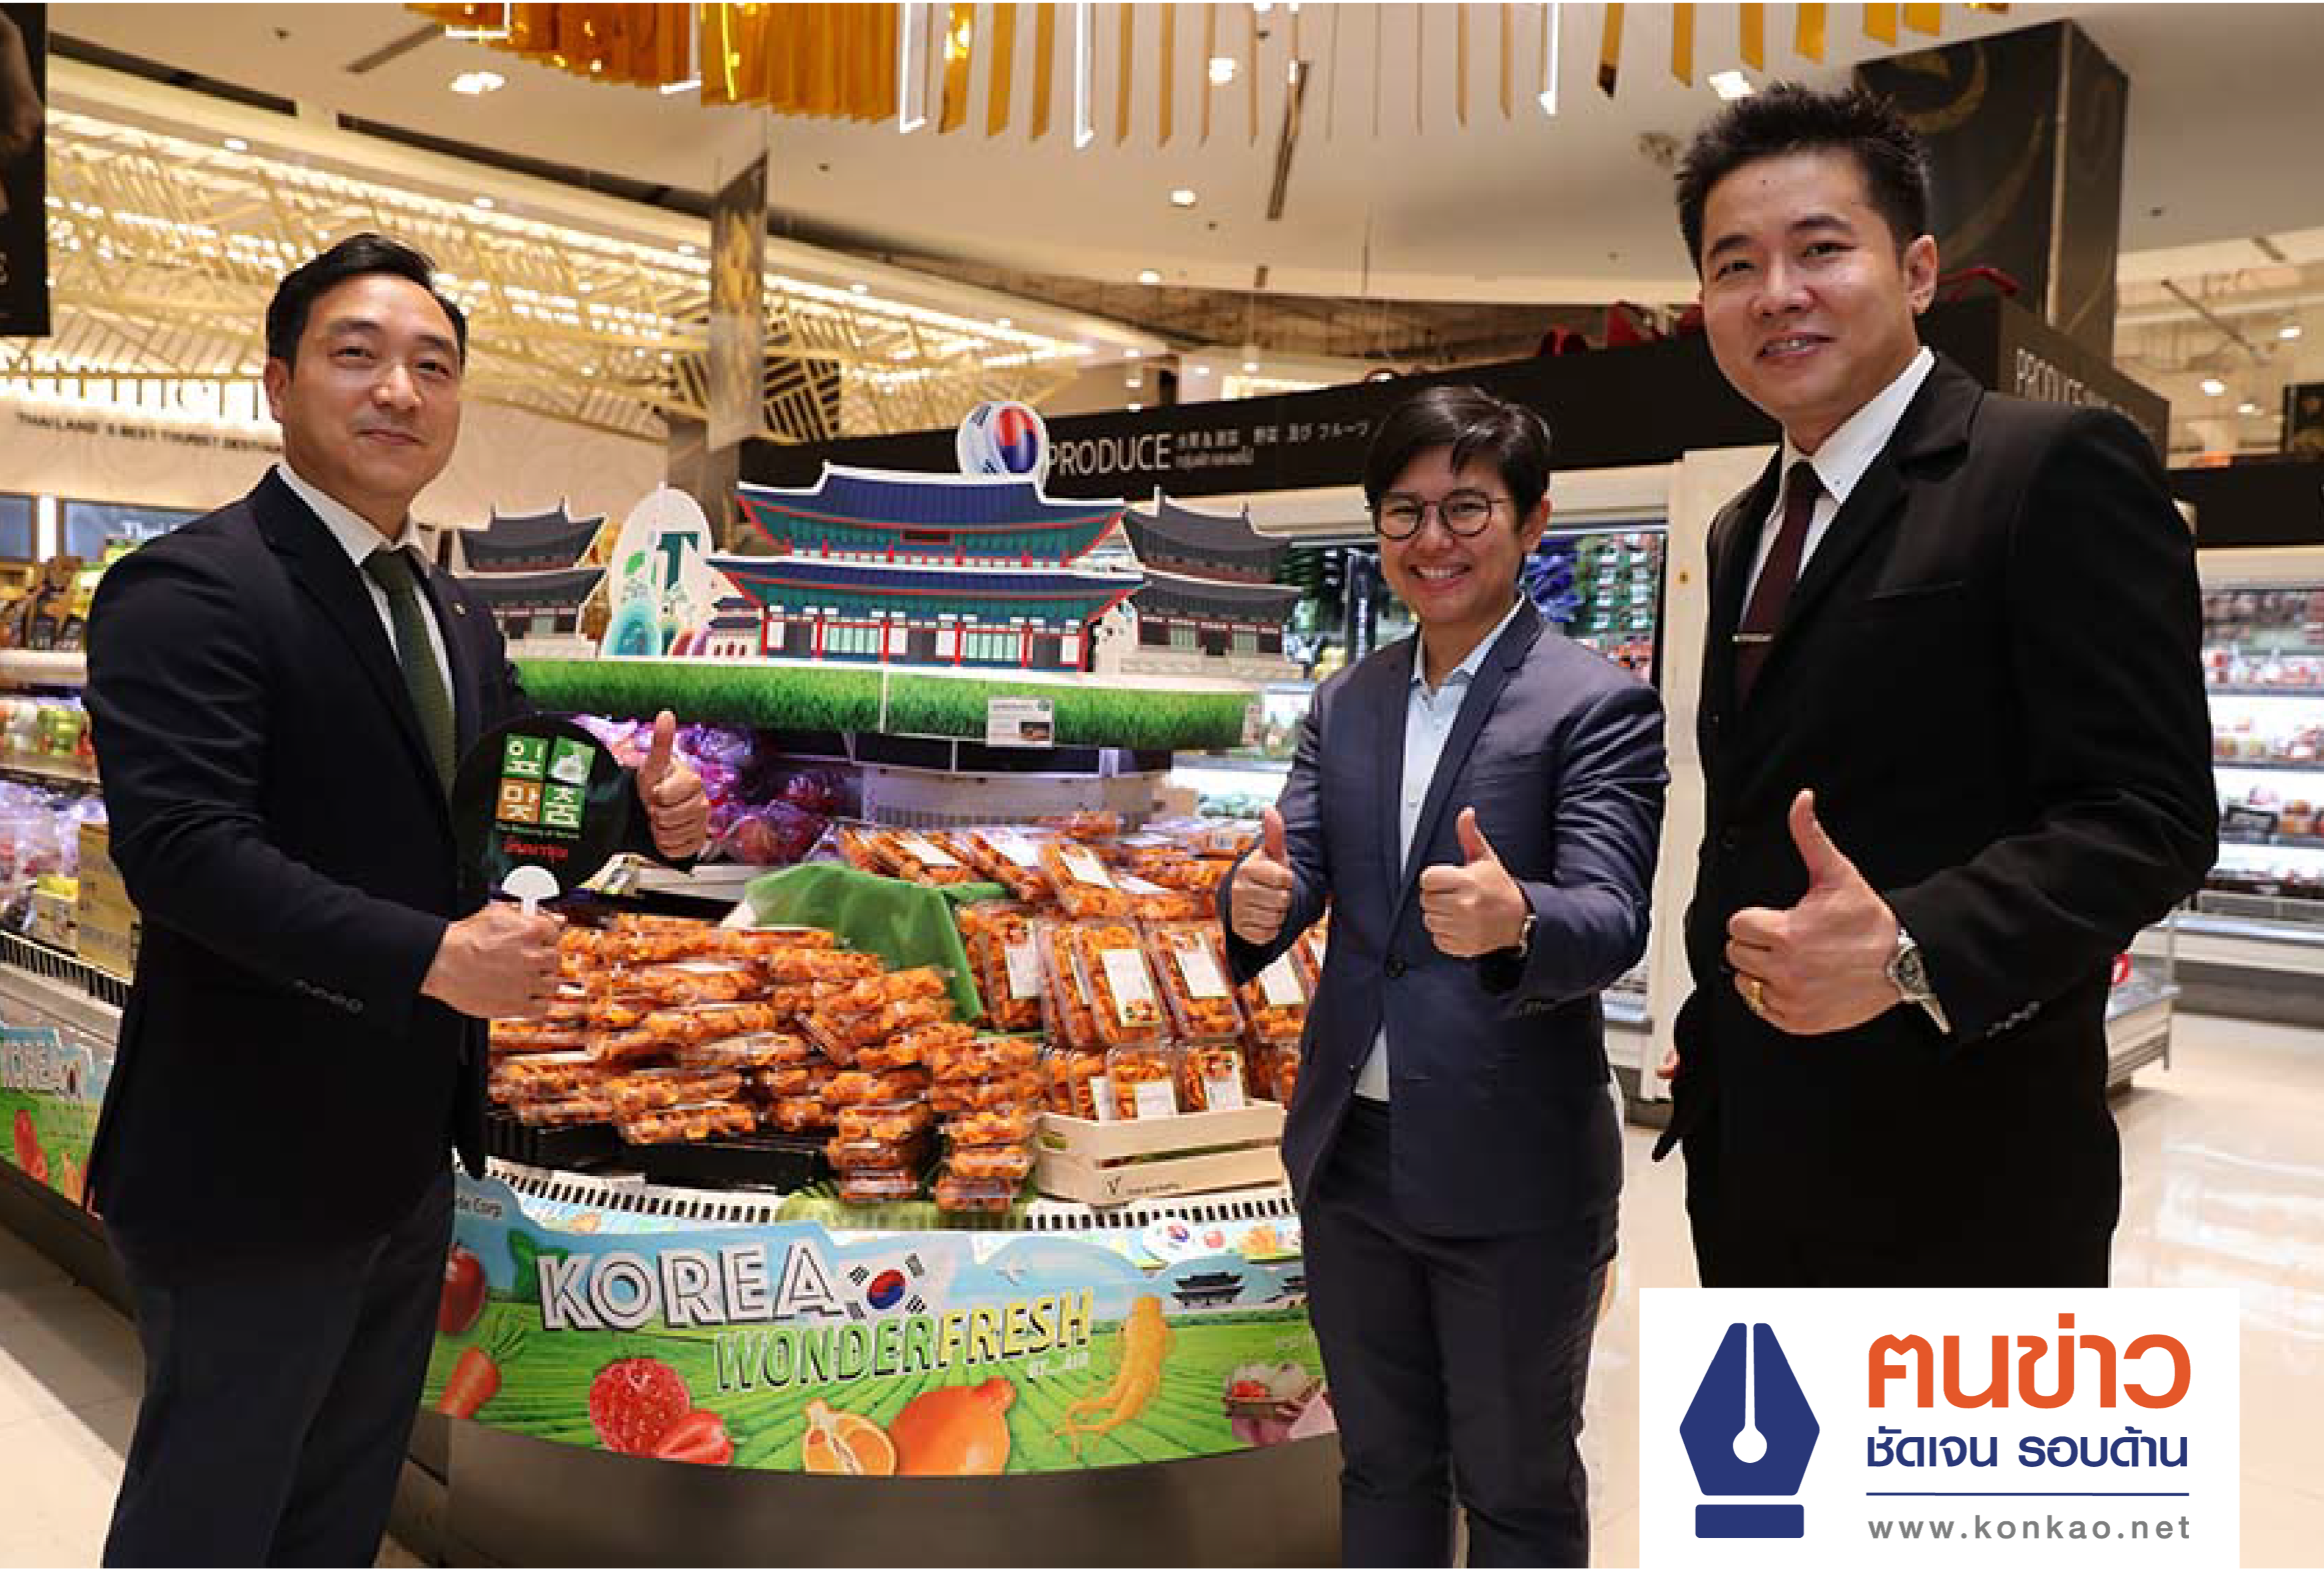 รัฐบาลเกาหลี เชื่อมั่นวัชมนฟู้ด ชวนคนไทยชิมผัก - ผลไม้นำเข้า อัดสินค้ามากกว่า 50 ชนิด